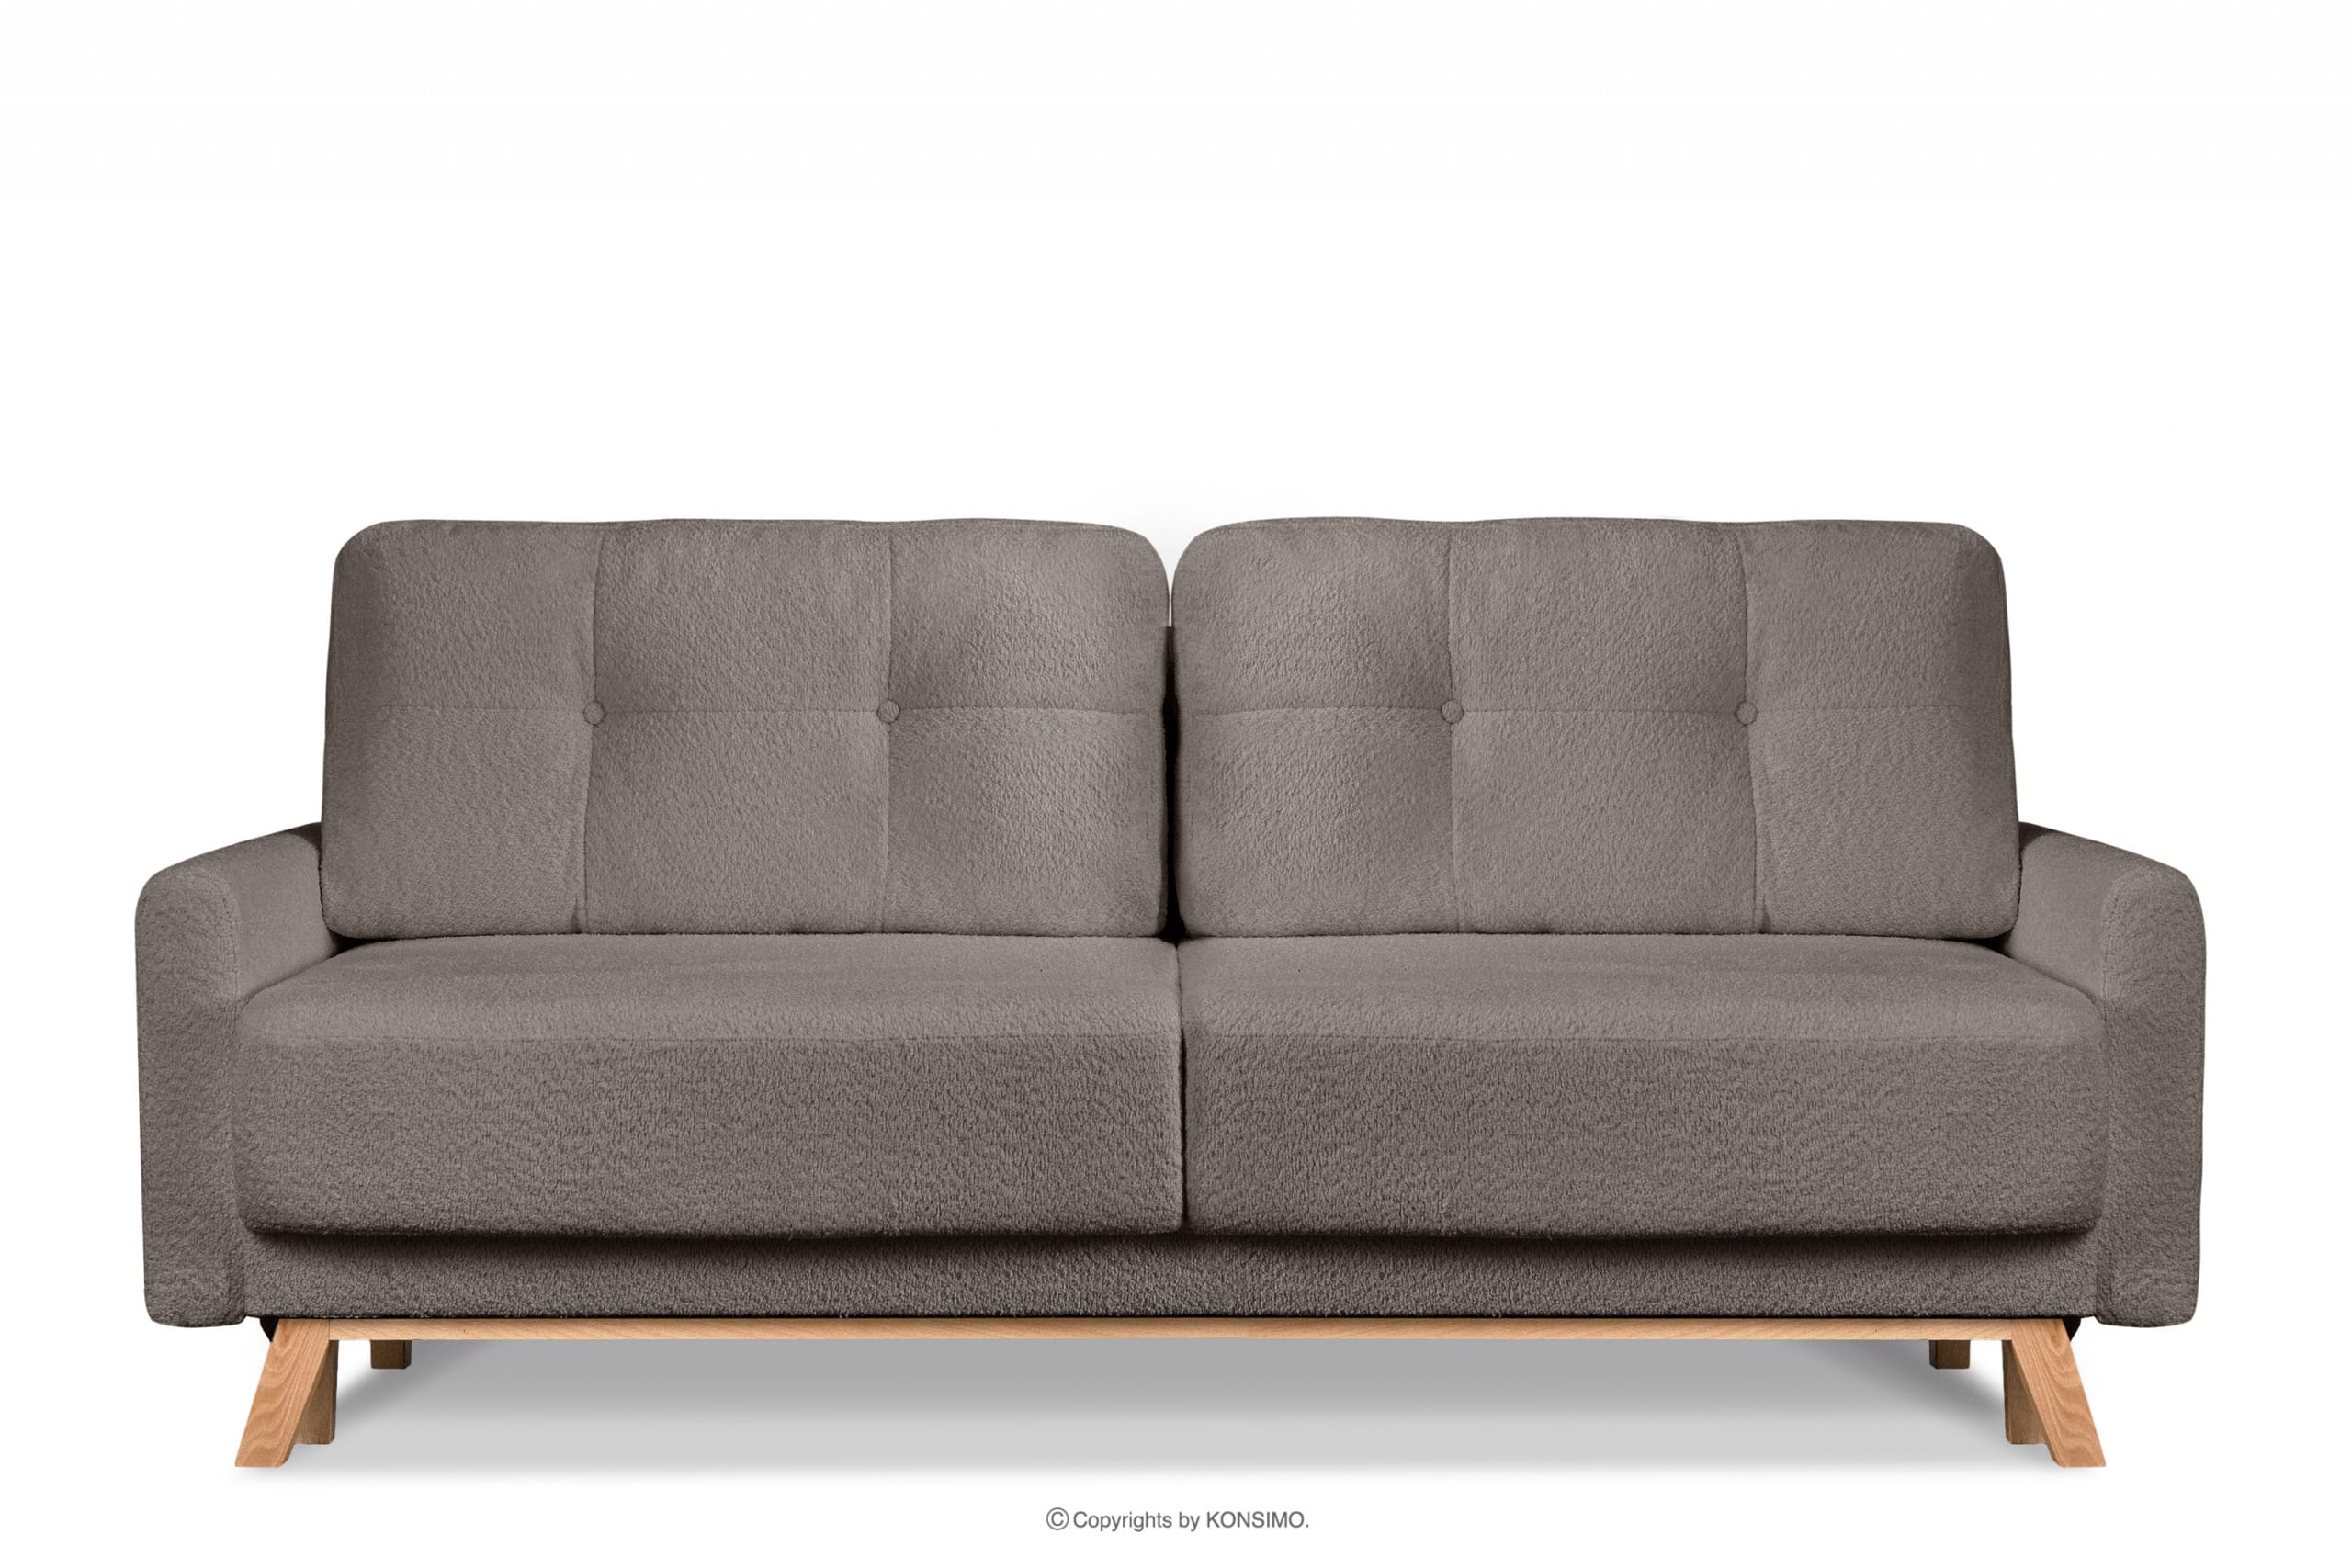 Skandynawska sofa w tkaninie baranek brązowa